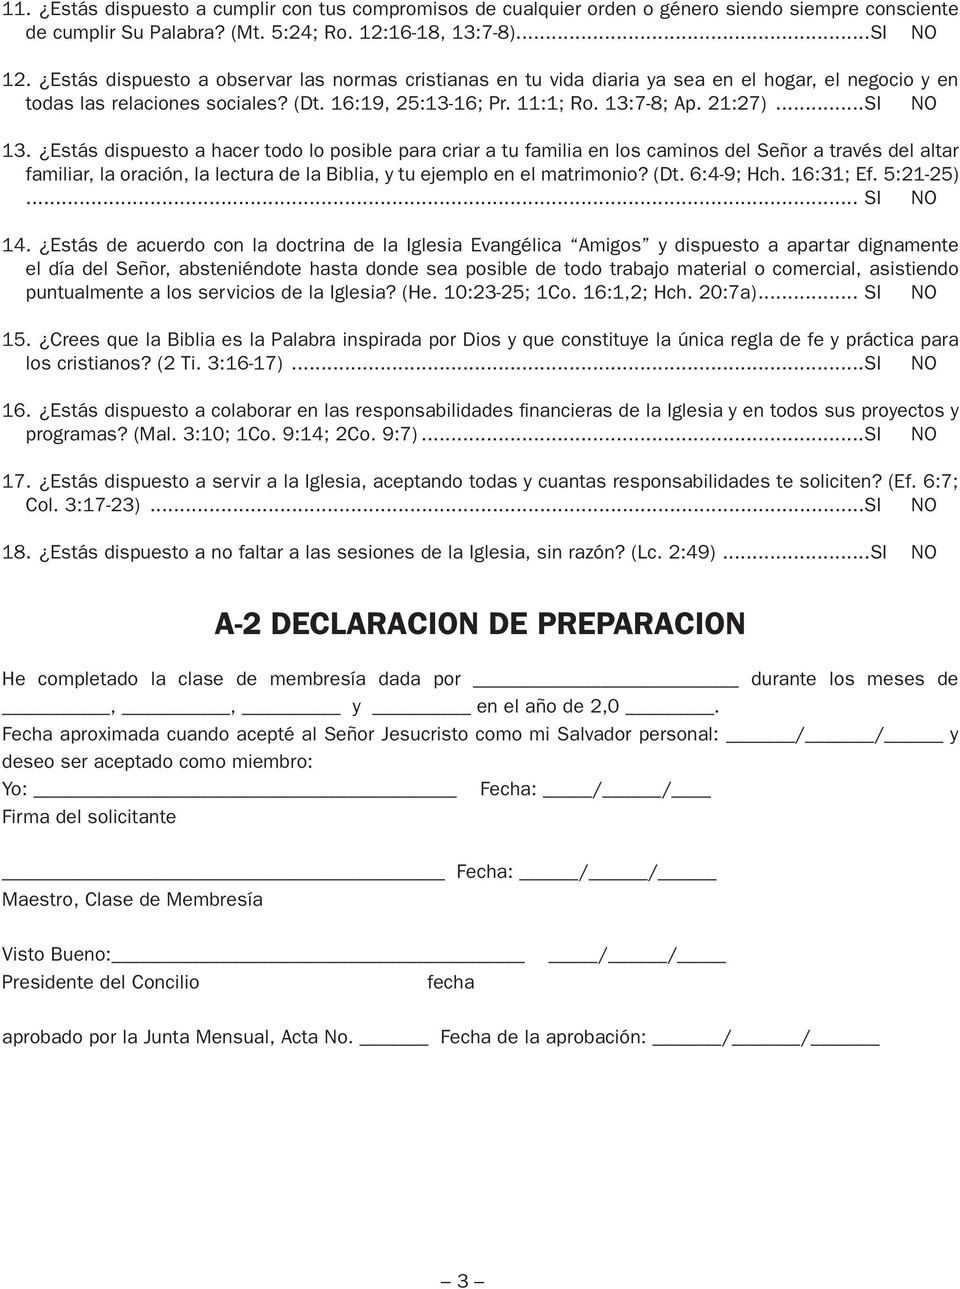 A-1 SOLICITUD DE MEMBRESIA IGLESIA EVANGELICA AMIGOS - PDF